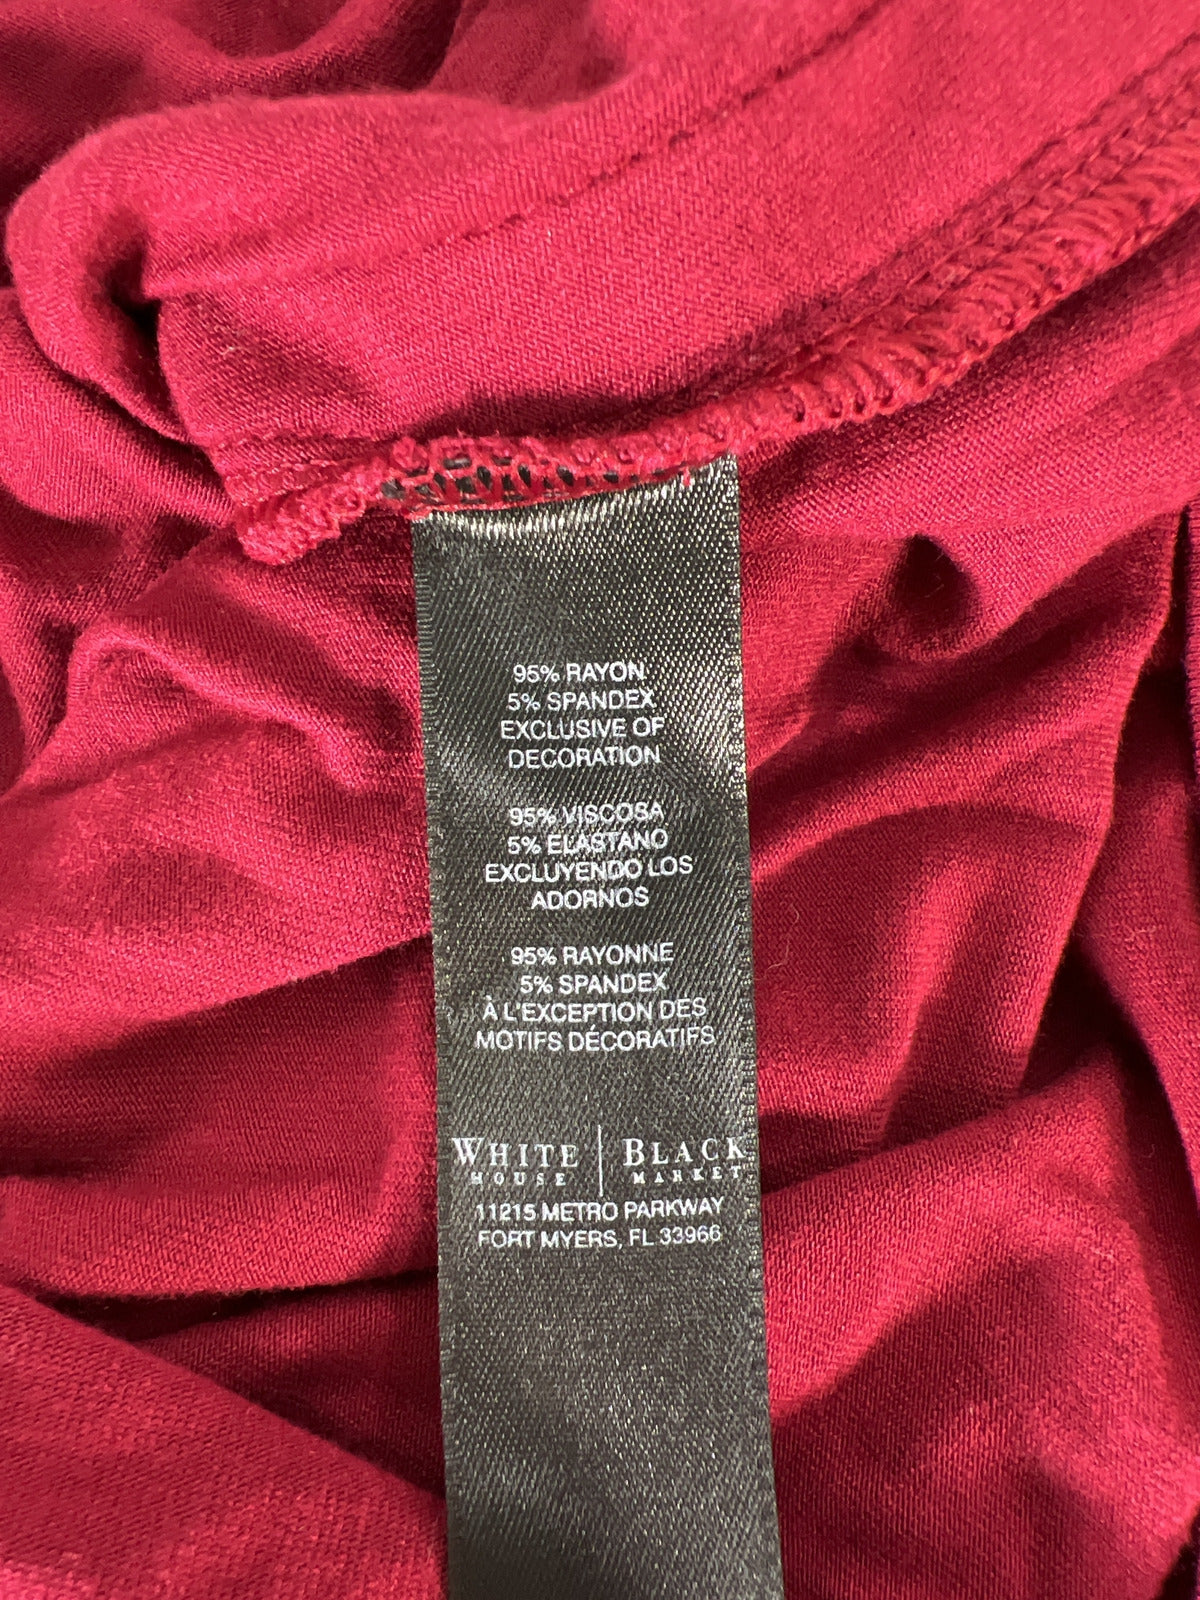 White House Black Market Women’s Burgundy/Red 3/4 Sleeve Blouse - XS